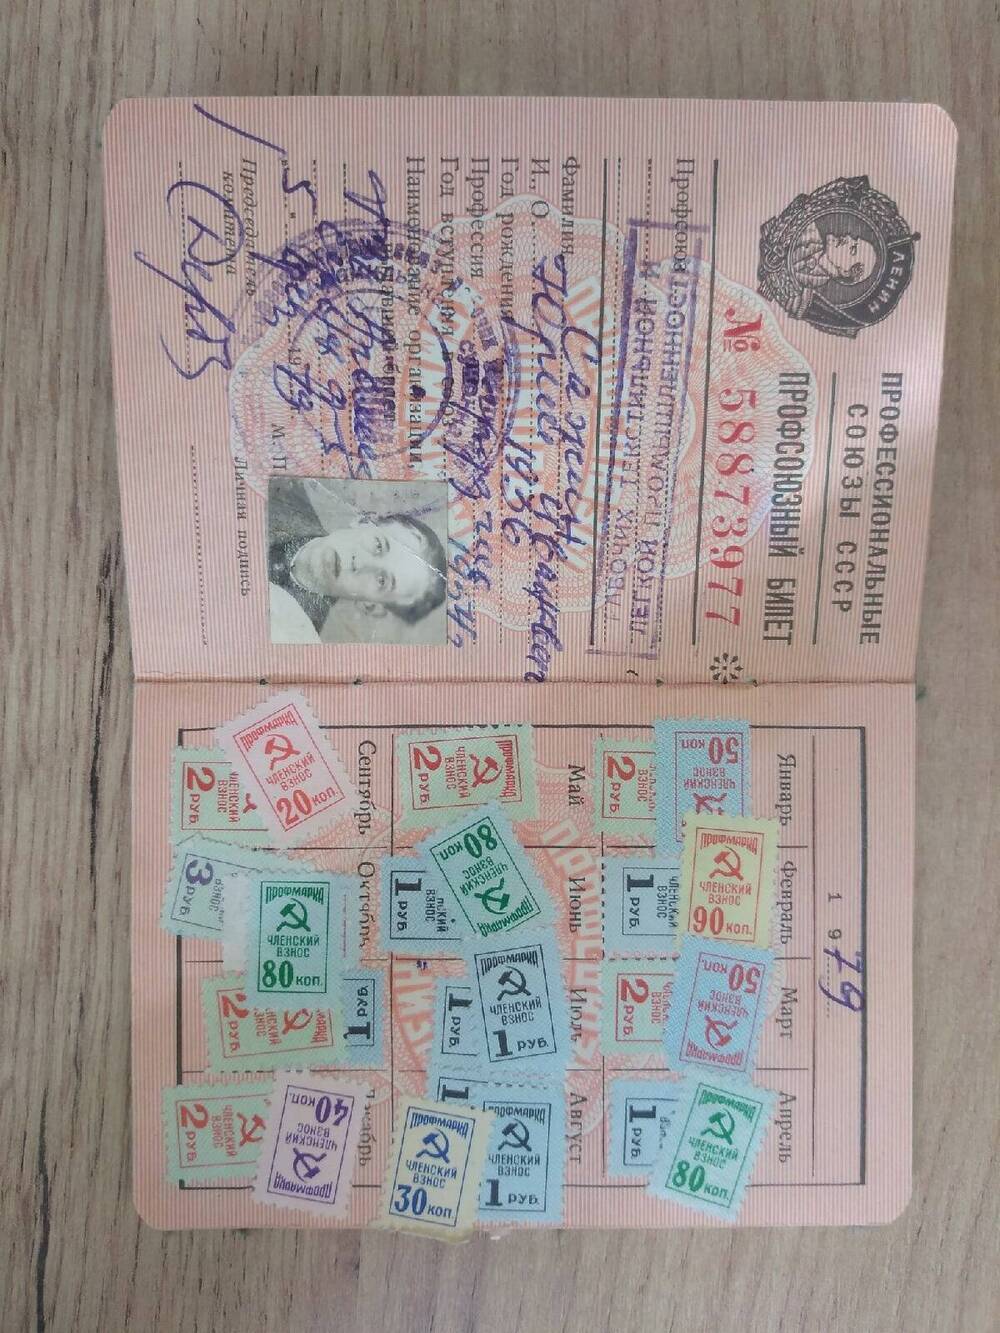 Профсоюзный билет Сажина Юрия Ивановича.  №58873977 от 05.02.1979г.